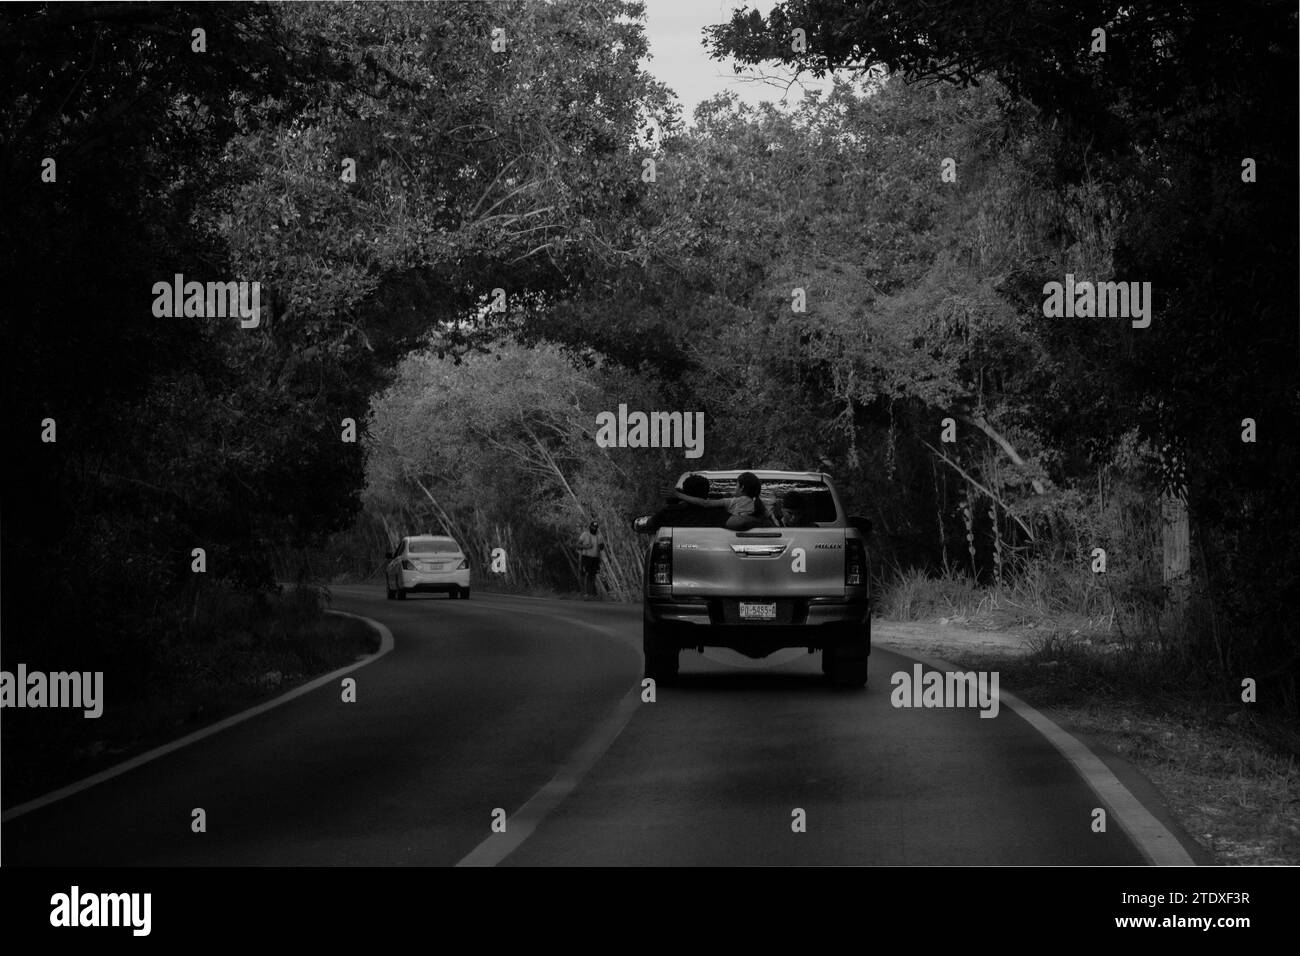 Ein Lkw fährt auf einer Straße durch Mangroven und schafft einen faszinierenden natürlichen Tunnel – eine malerische Fahrt. Stockfoto